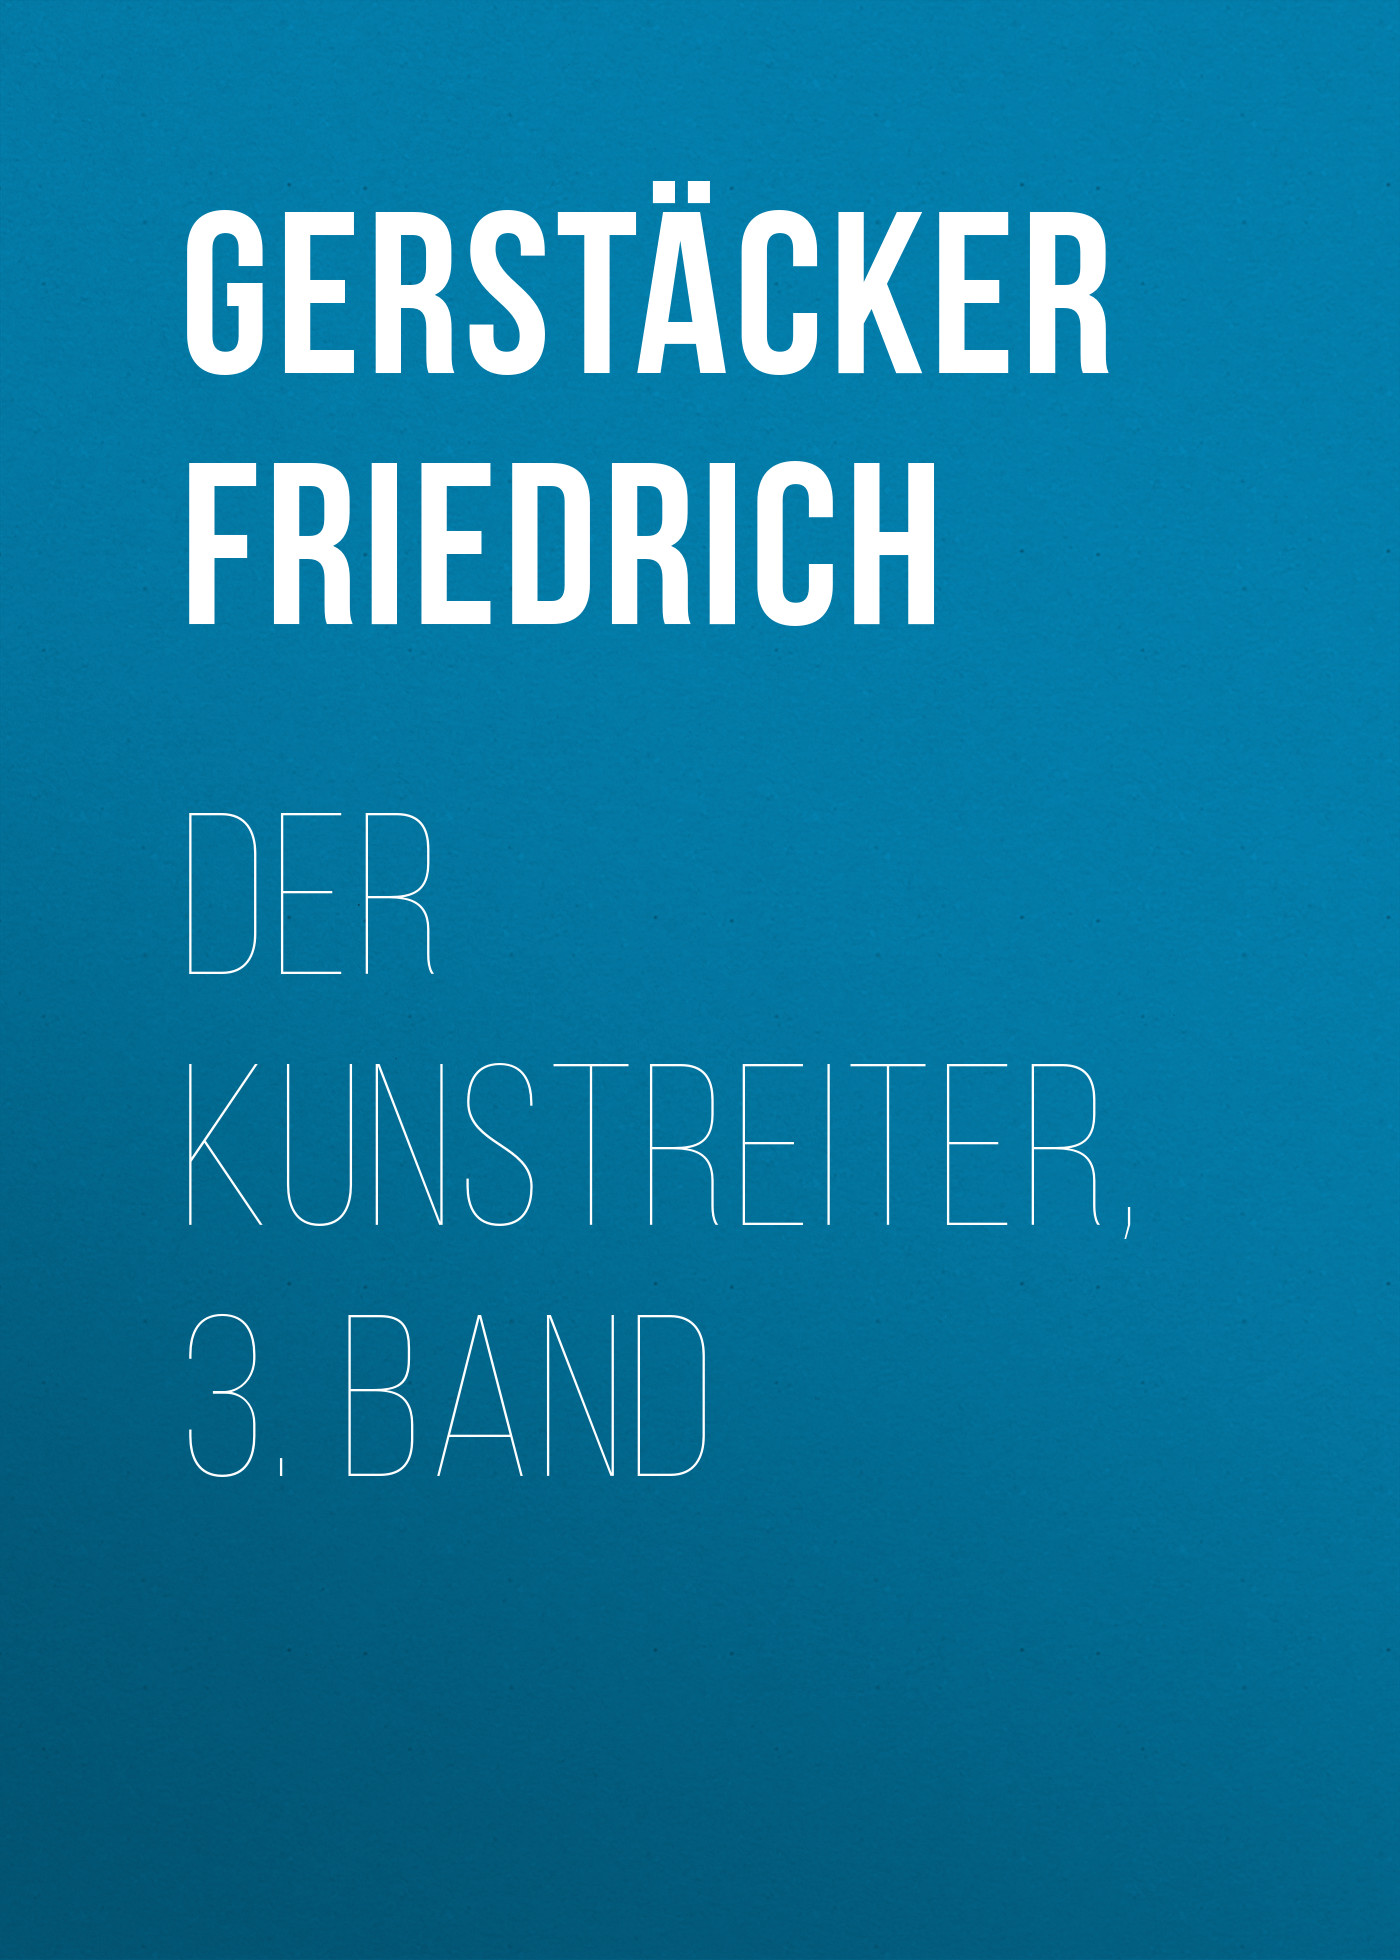 Книга Der Kunstreiter, 3. Band из серии , созданная Friedrich Gerstäcker, может относится к жанру Зарубежная старинная литература, Зарубежная классика. Стоимость электронной книги Der Kunstreiter, 3. Band с идентификатором 24937805 составляет 0 руб.